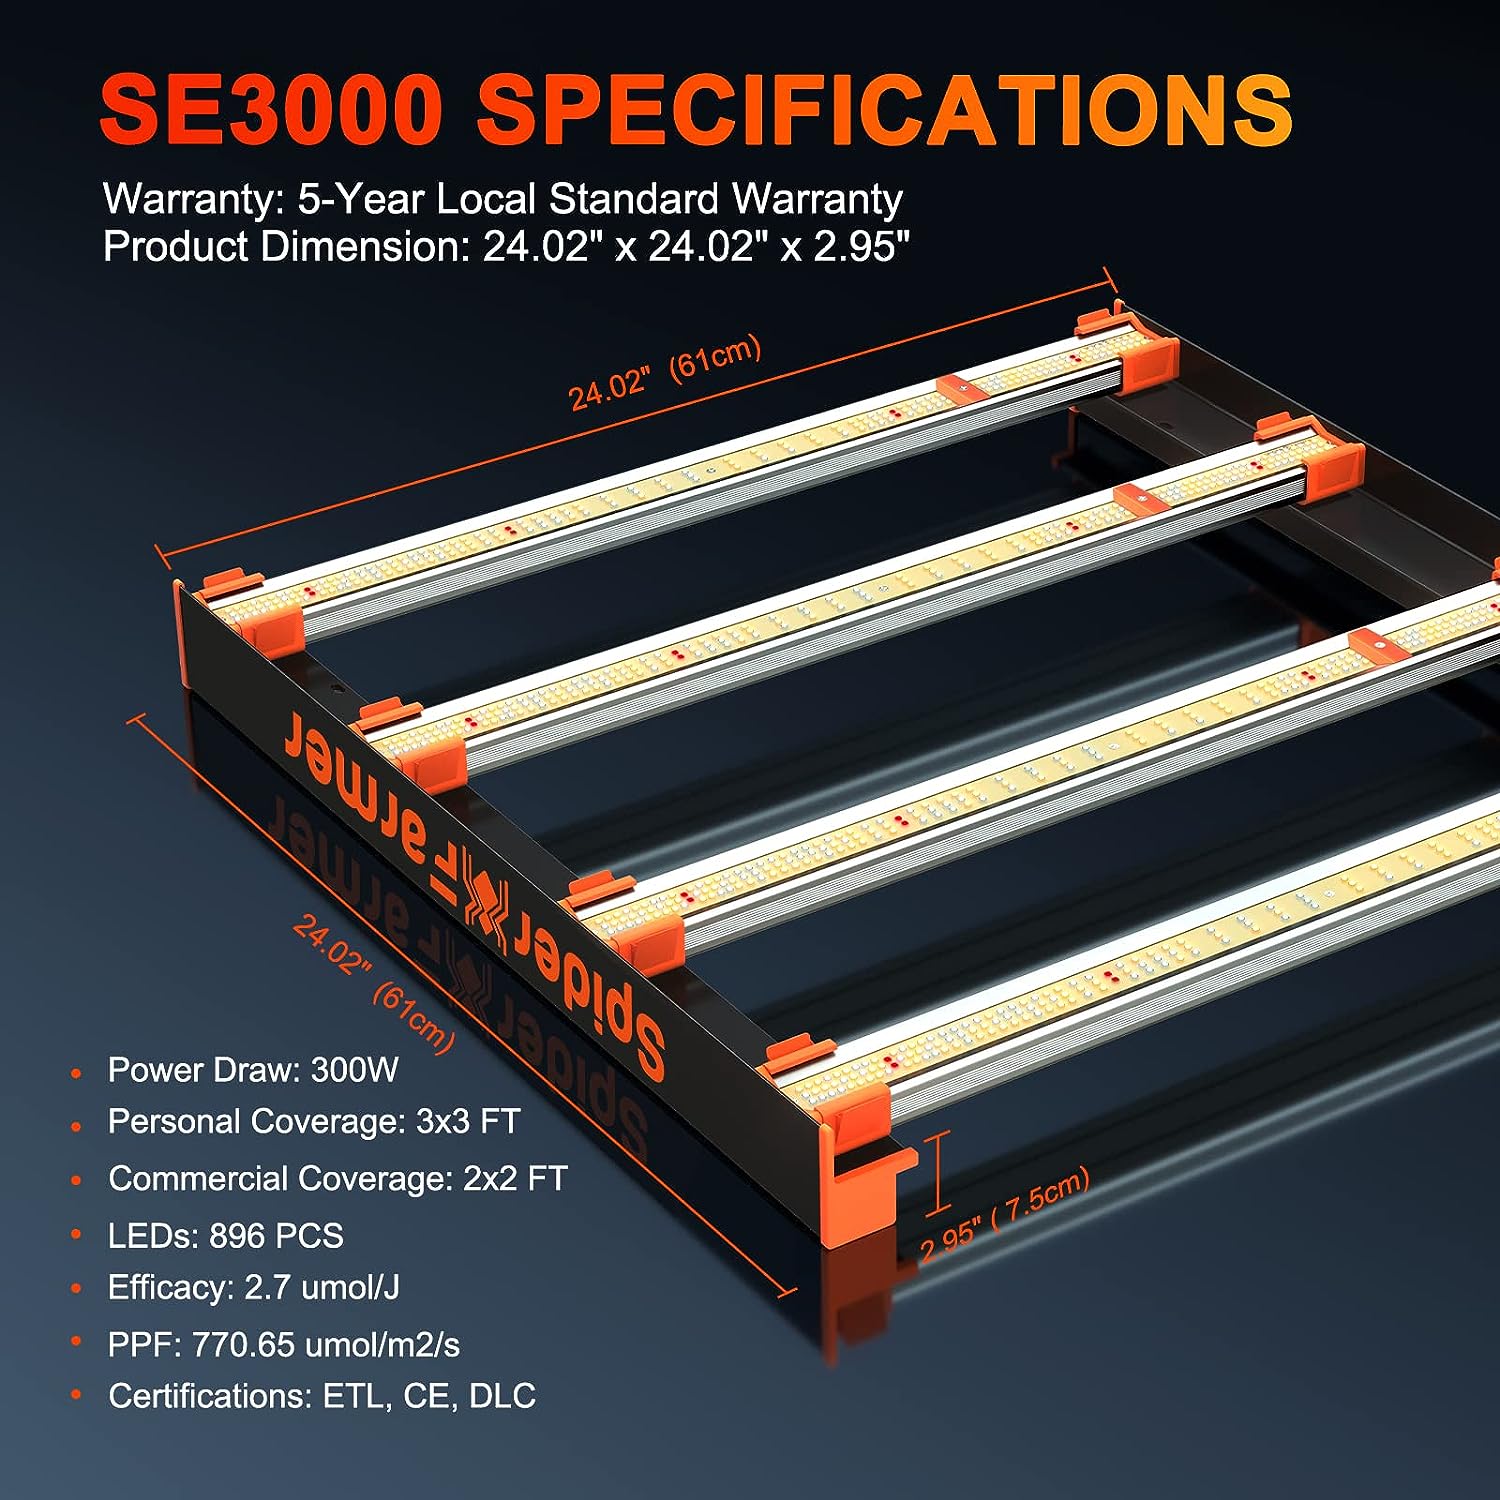 Lumière de culture LED à spectre complet SE3000 améliorée par Spider Farmer®